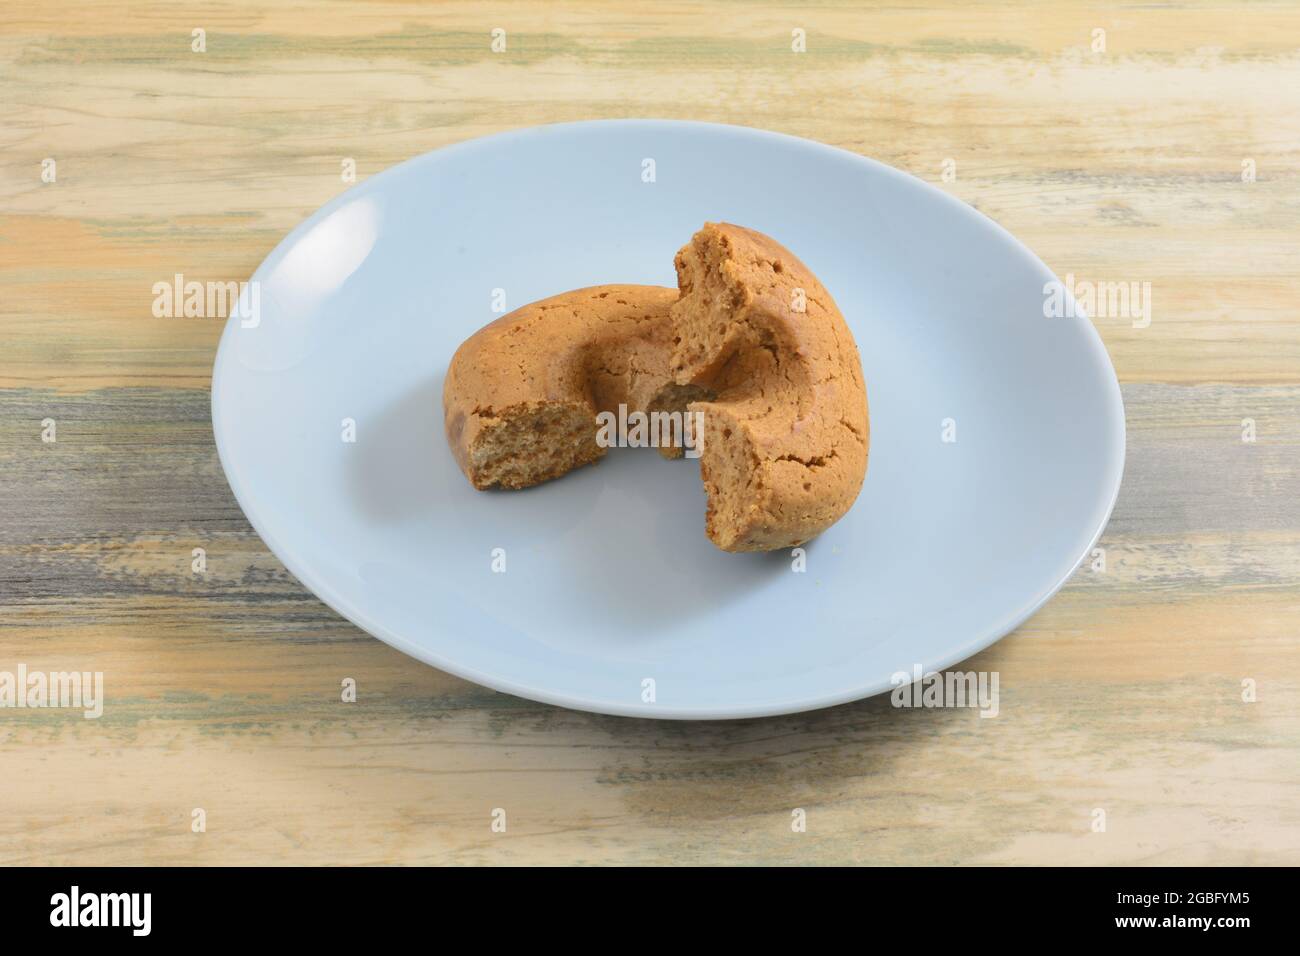 Zerbrochener griechischer Traubenmost moustokouloura weiche Kekshälften auf blauem Snackteller Stockfoto